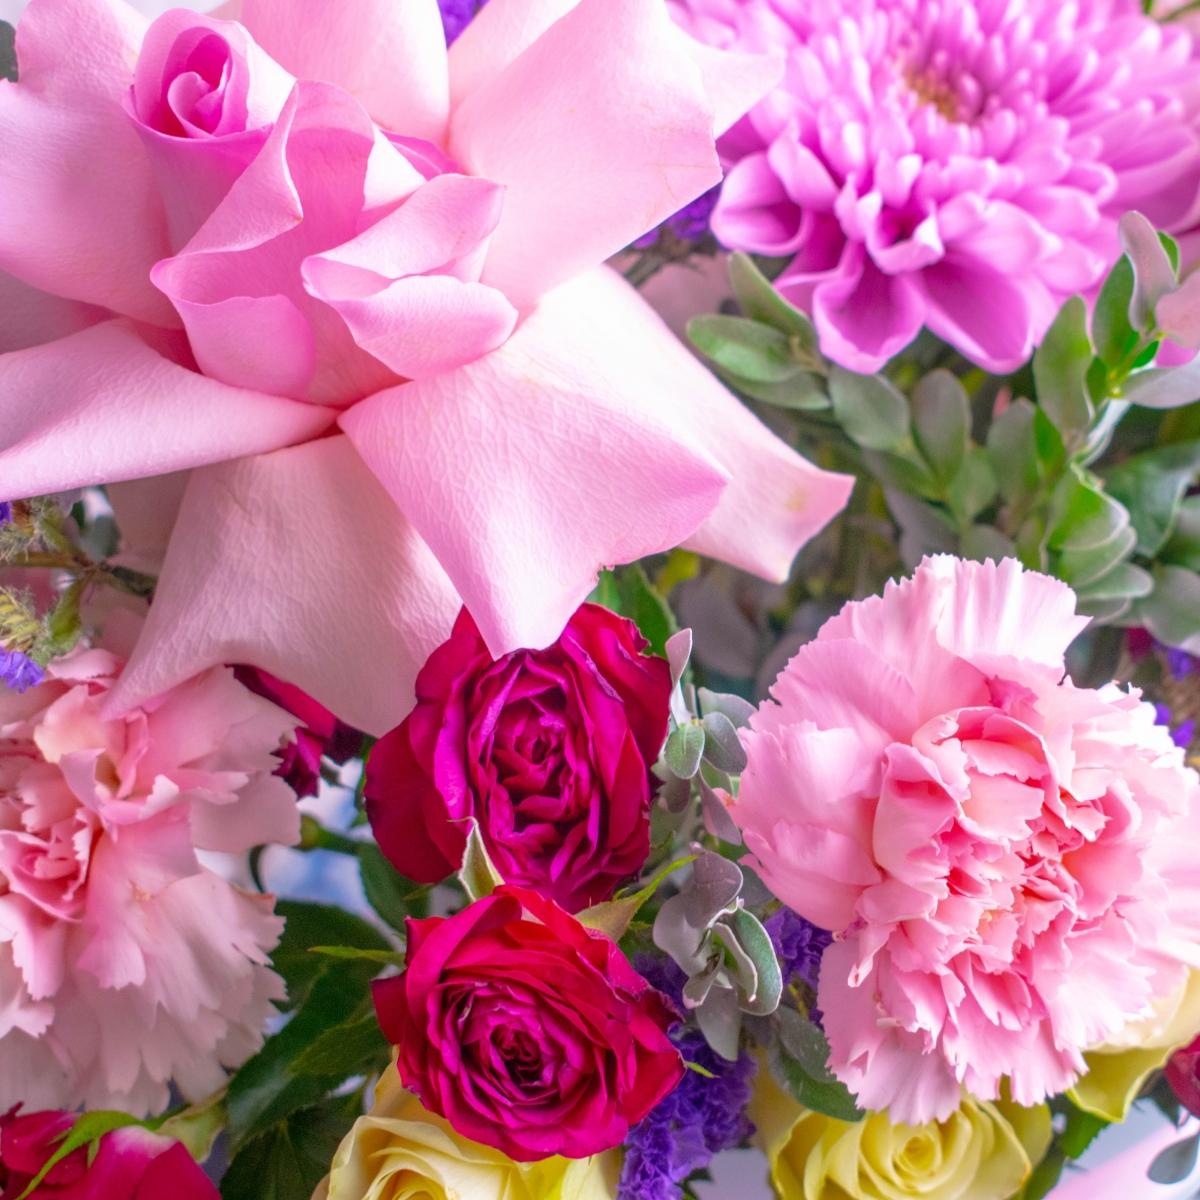 Коробка цветов с розами и розовыми гвоздиками